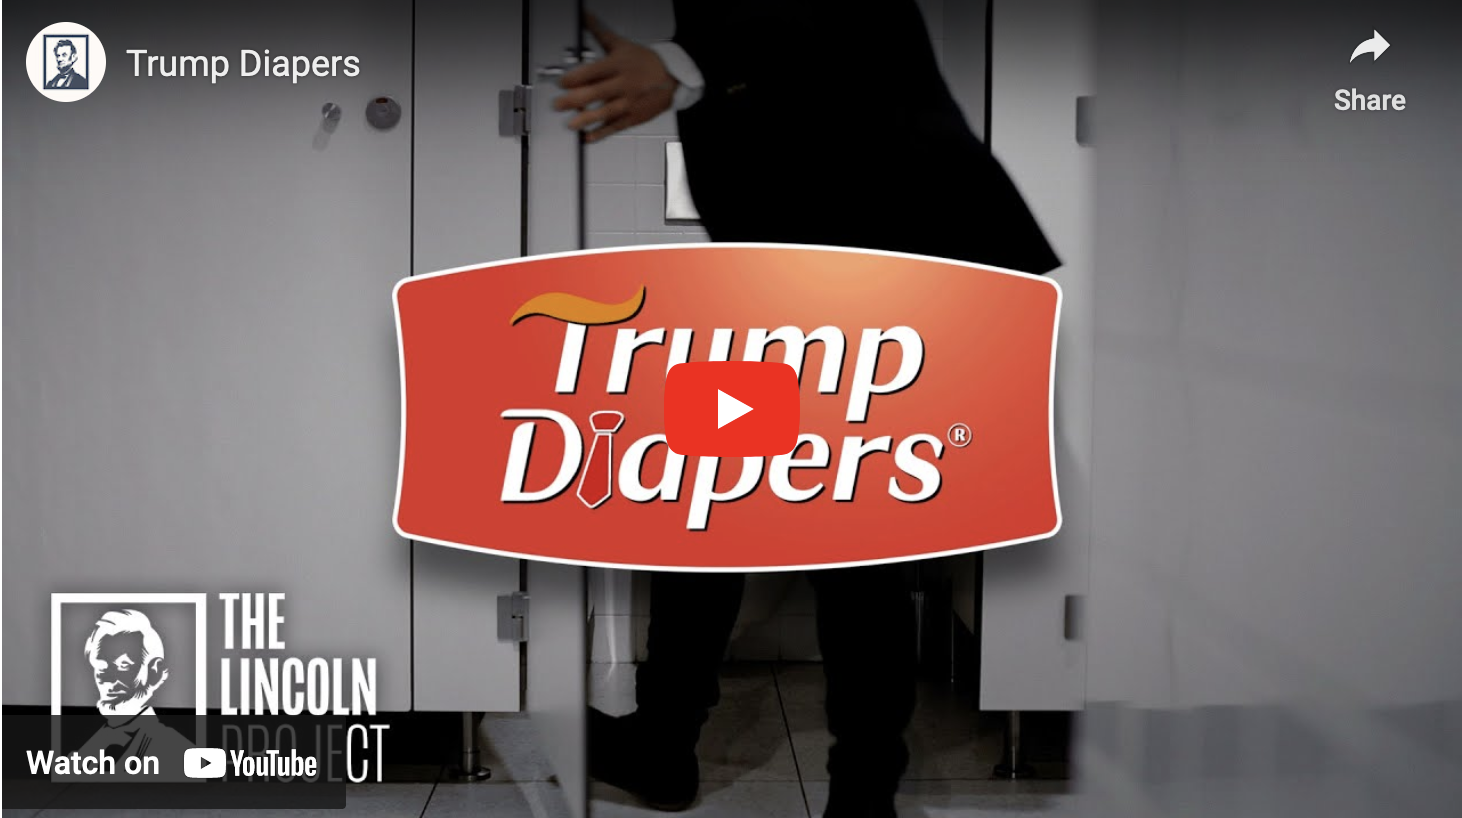 Trump Diapers